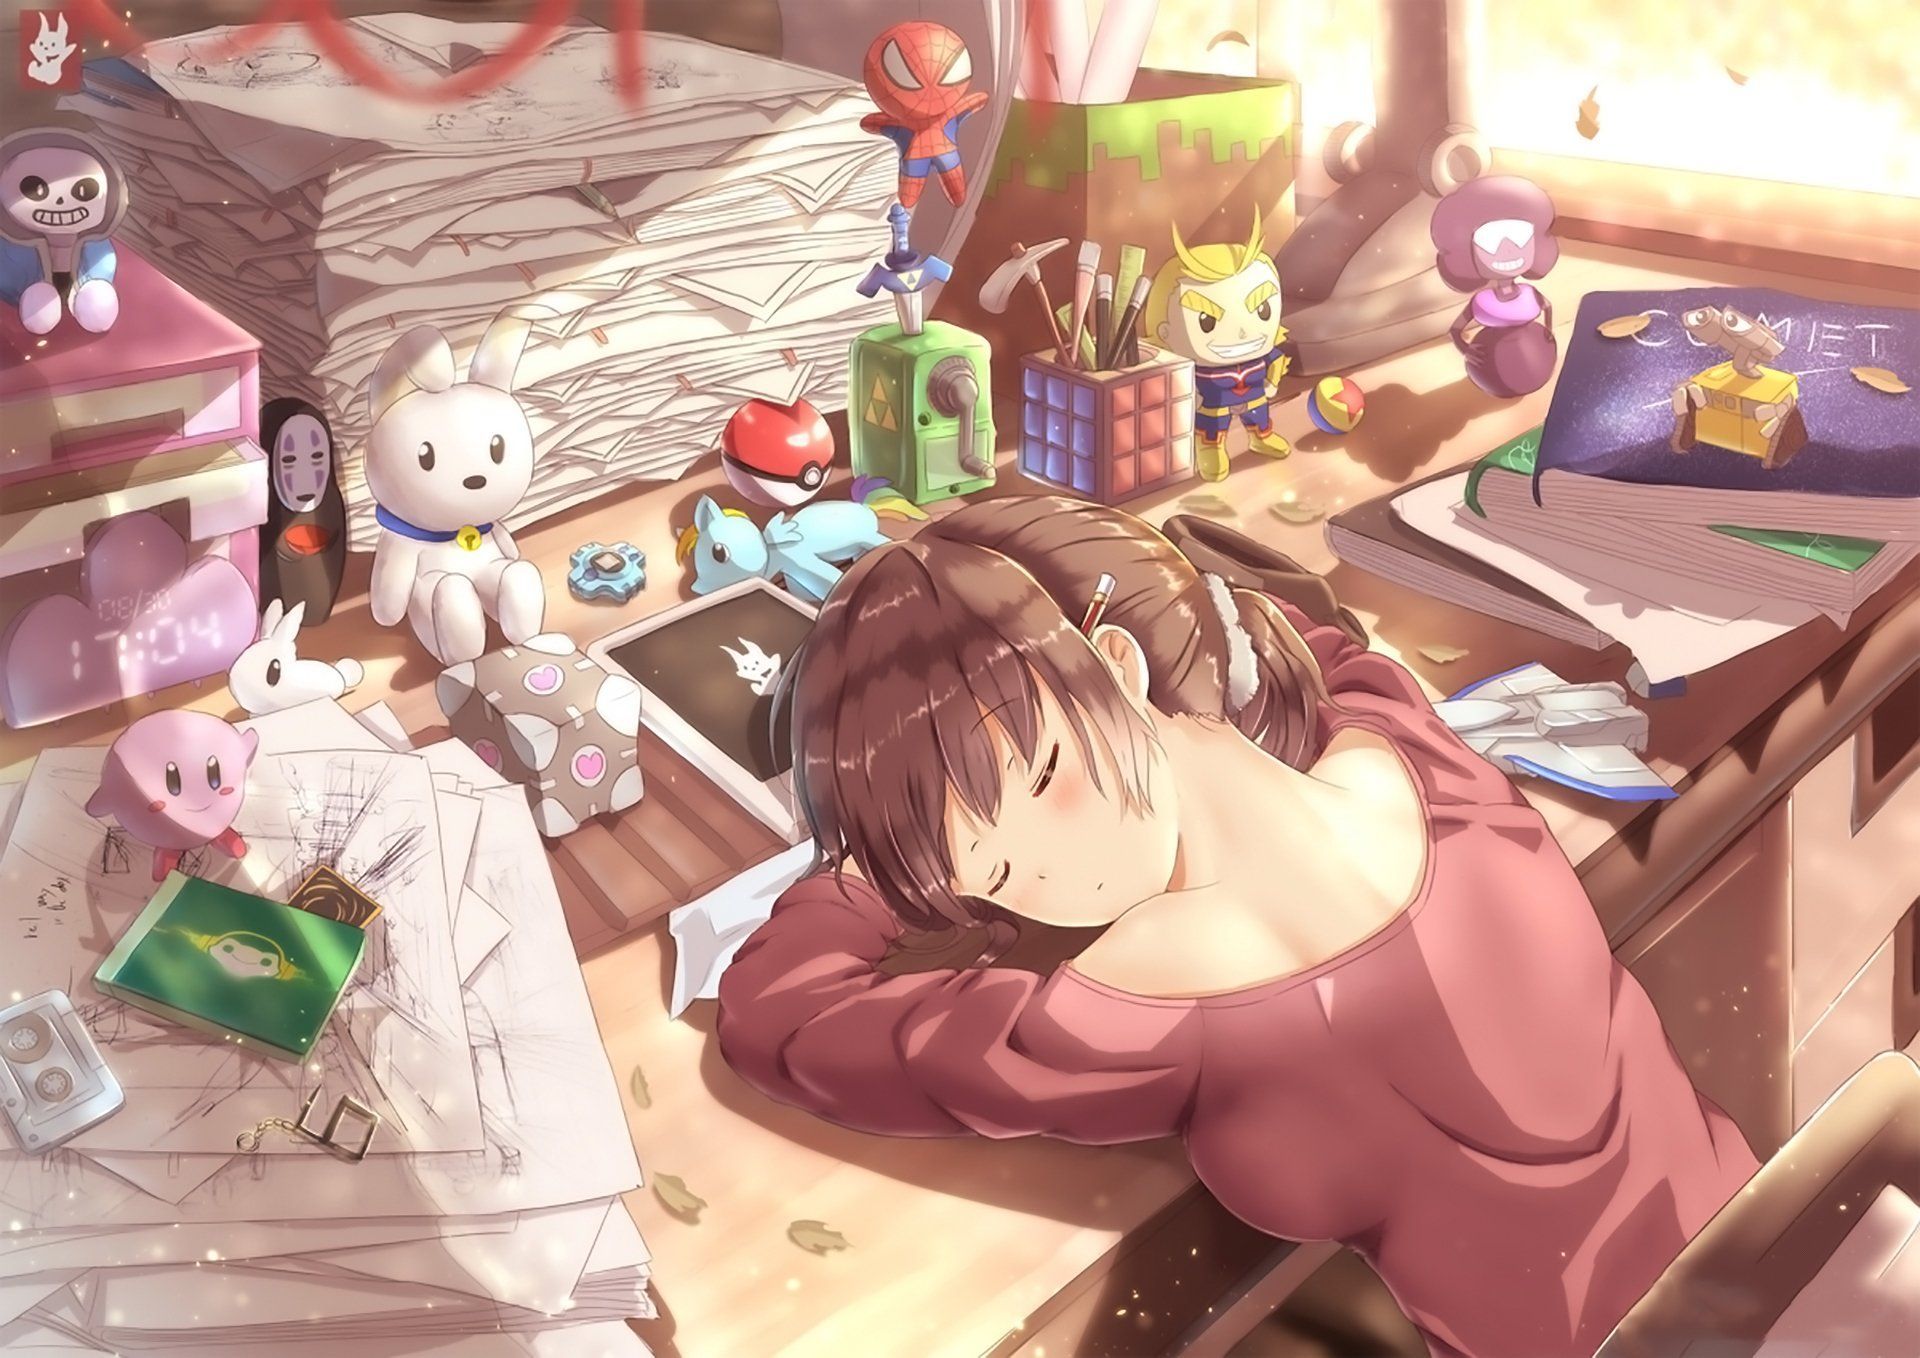 Anime Original Girl Desk Sleeping Wallpaper. Anime